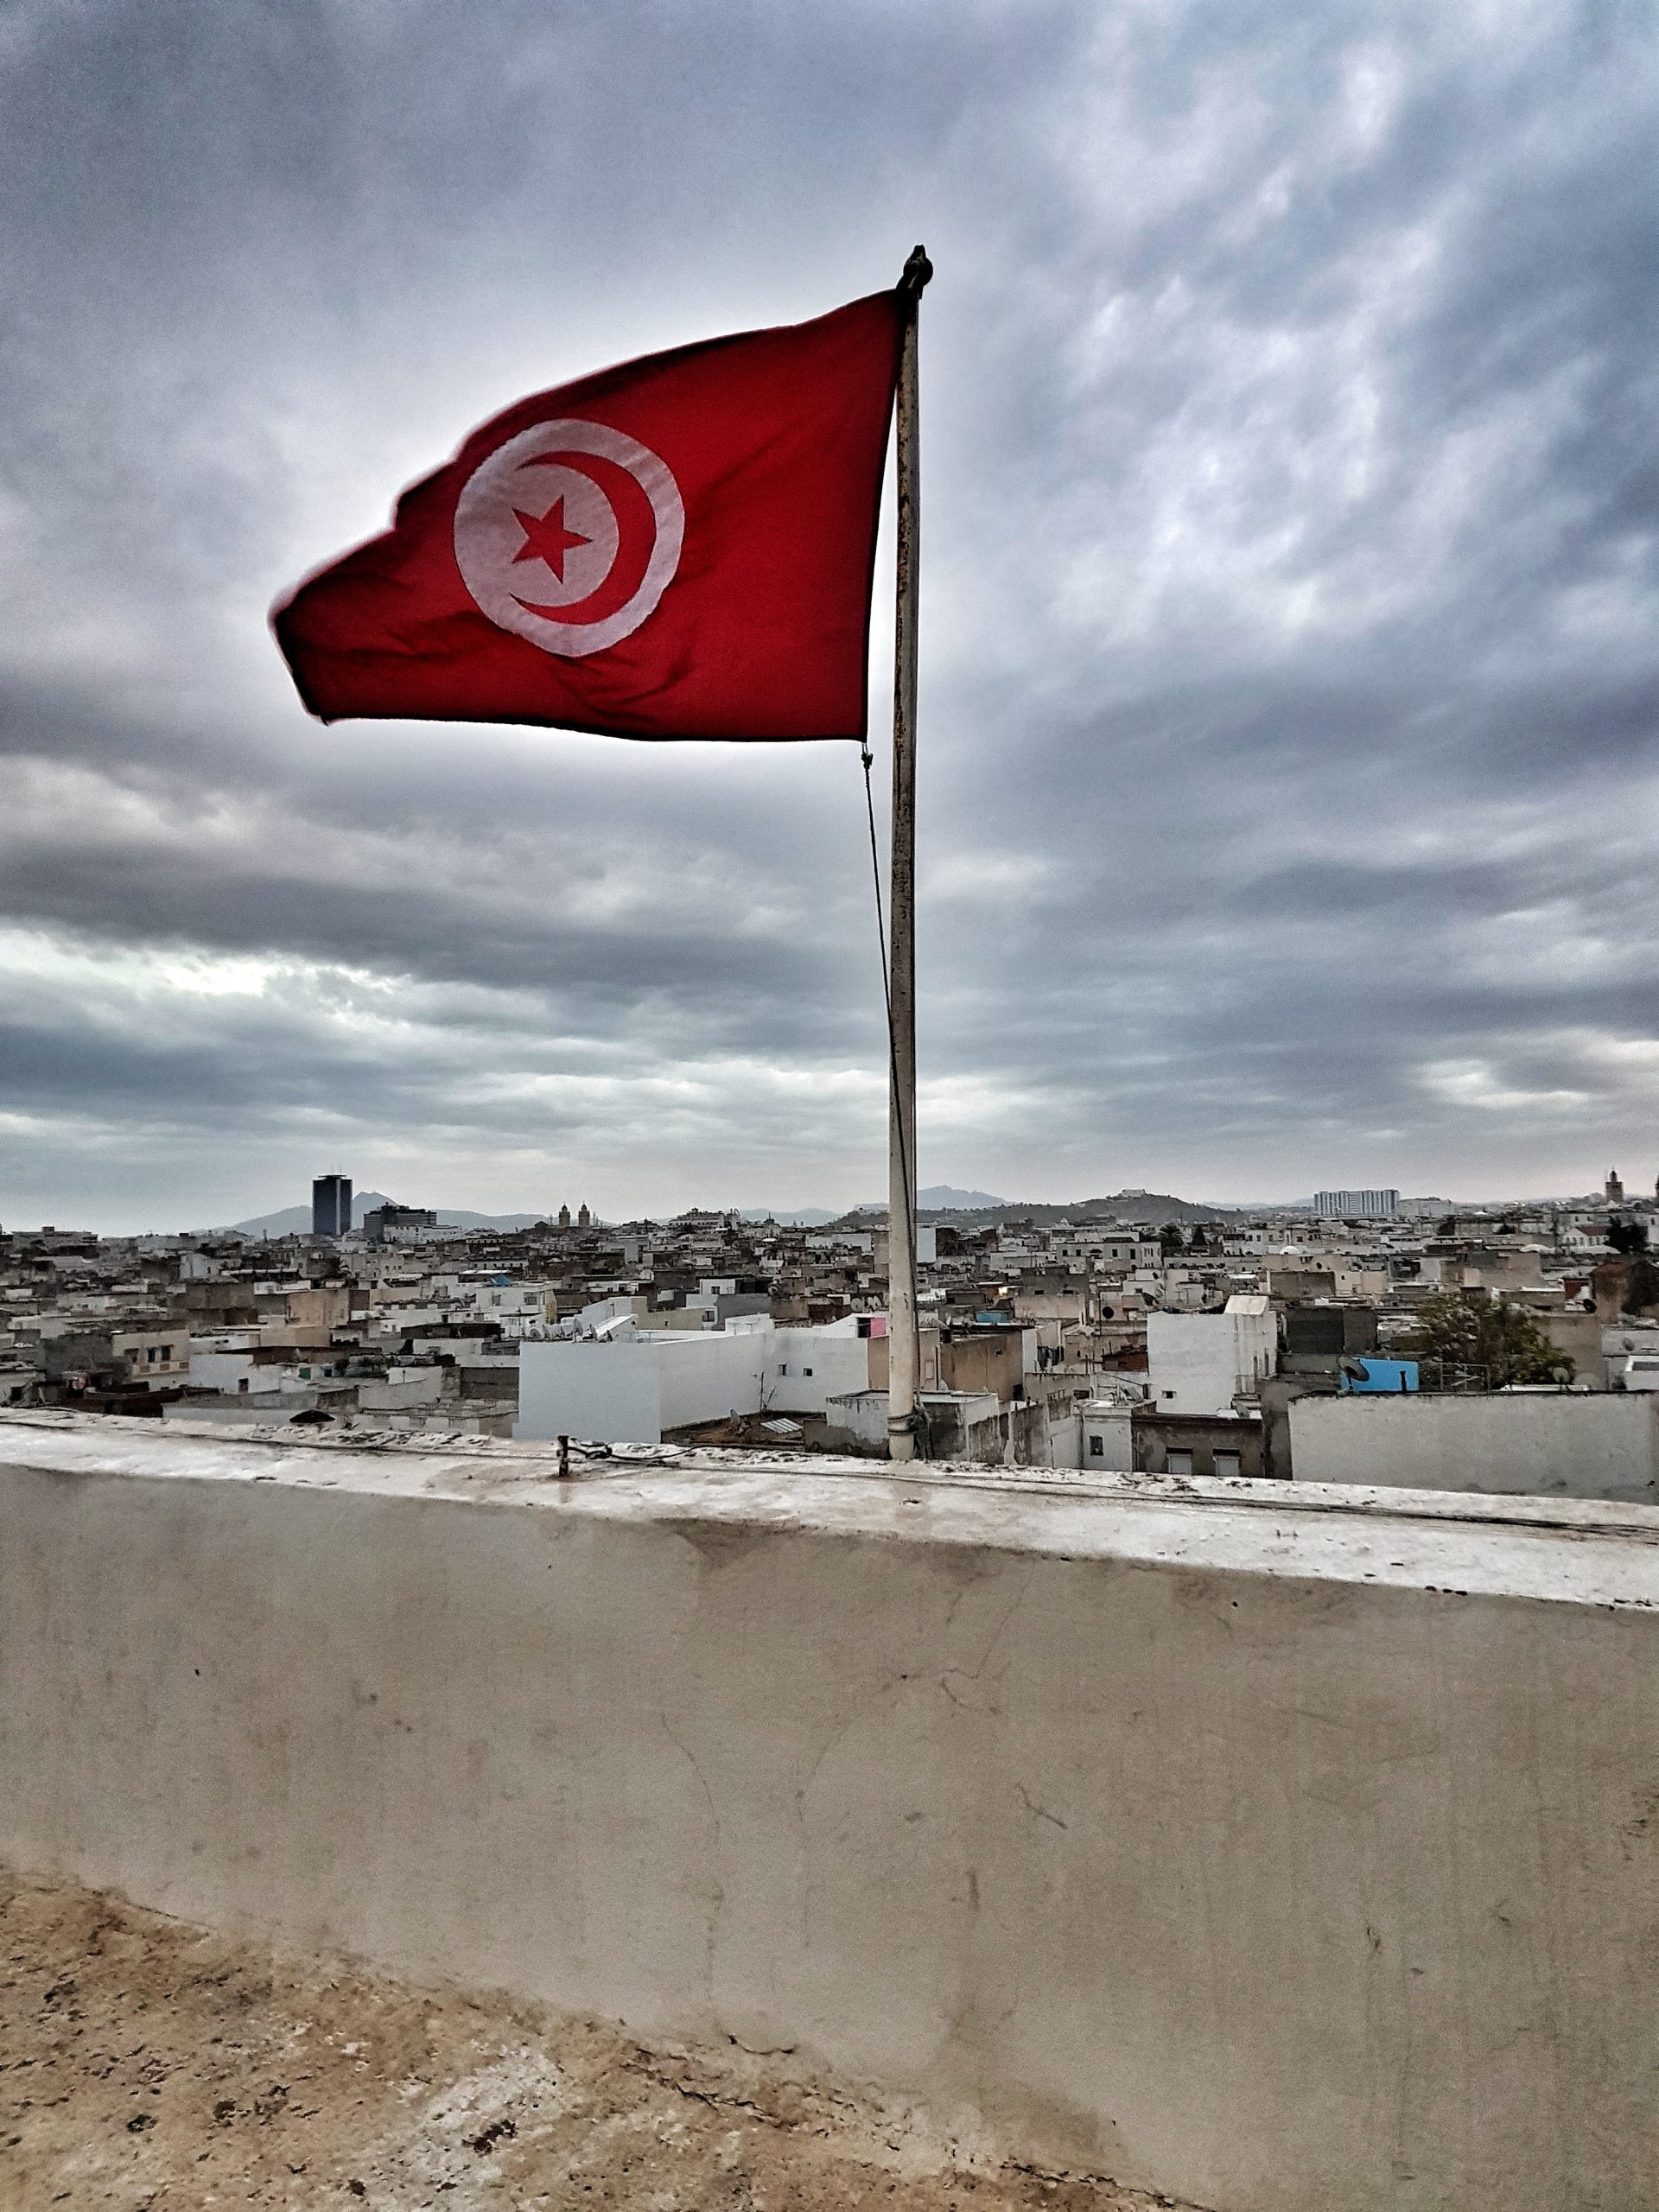 تونس يرفرف فوق المدينة scaled إتفاق تونسي ليبي علي استعادة التعاون الثنائي في مجالي النفط والغاز الطبيعي